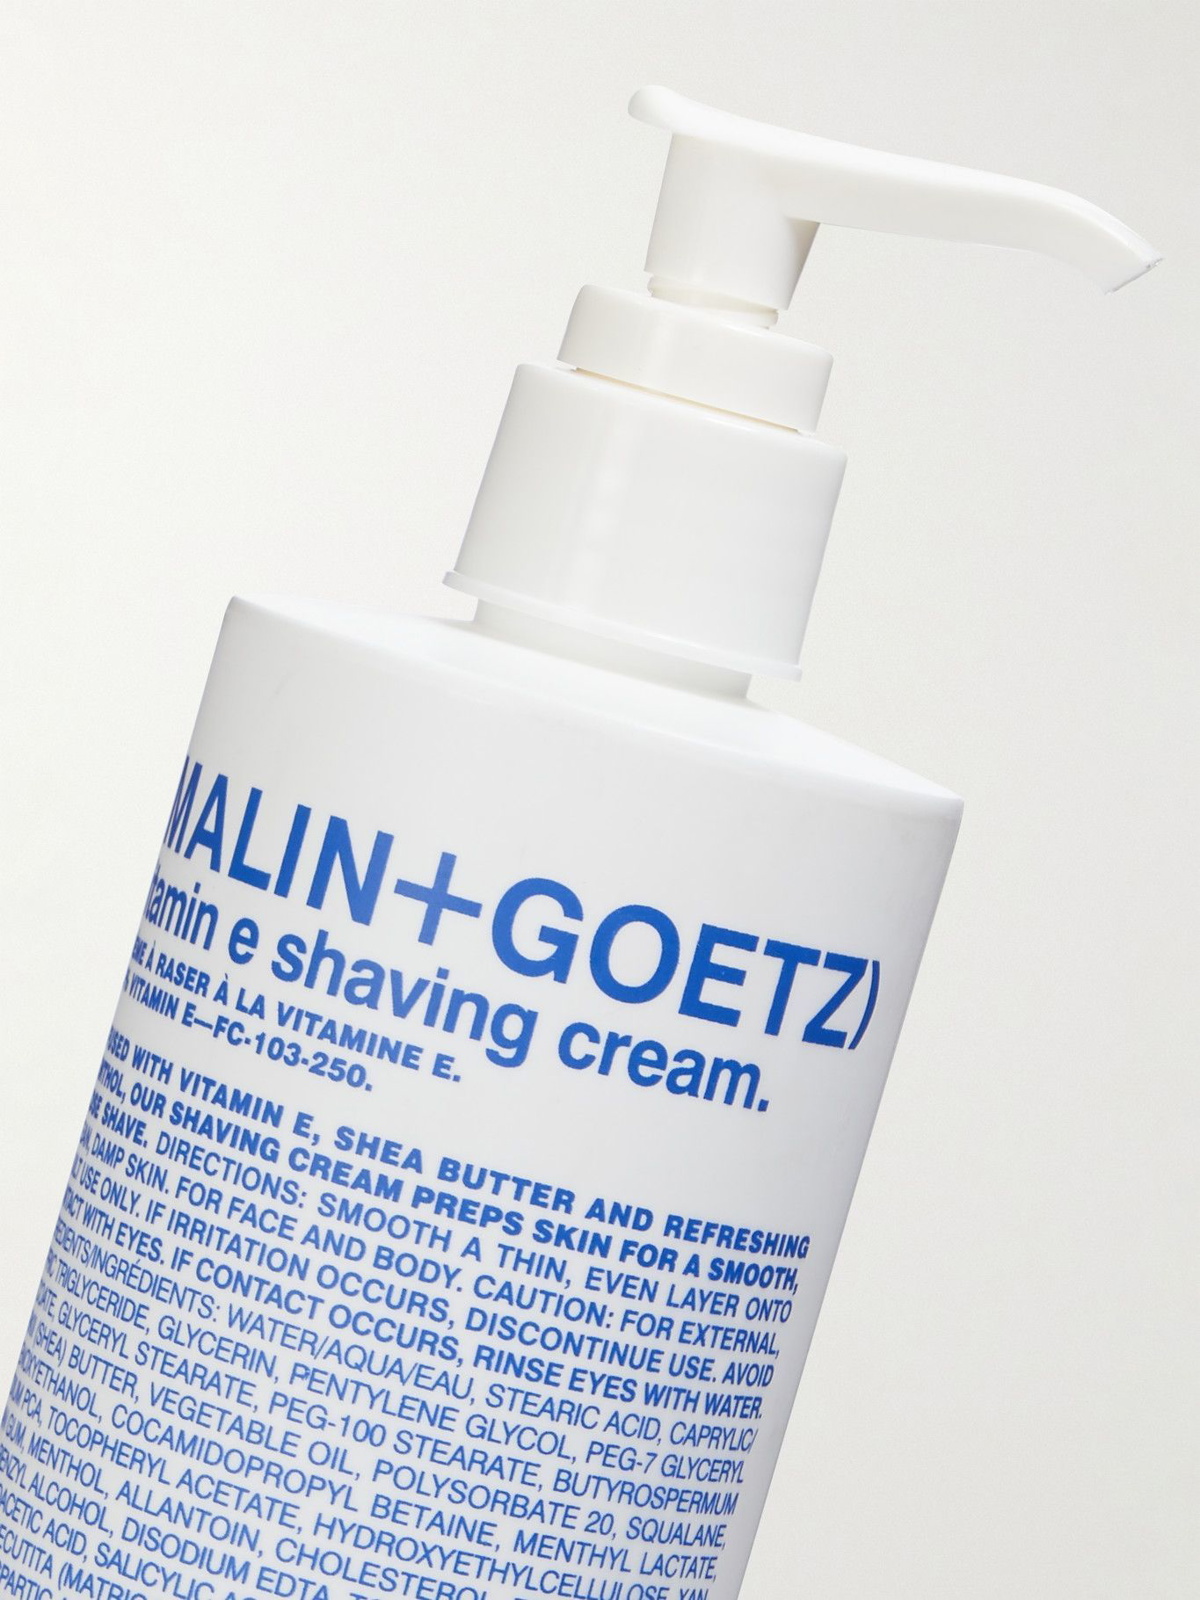 Photo: Malin Goetz - Vitamin E Shaving Cream, 250ml